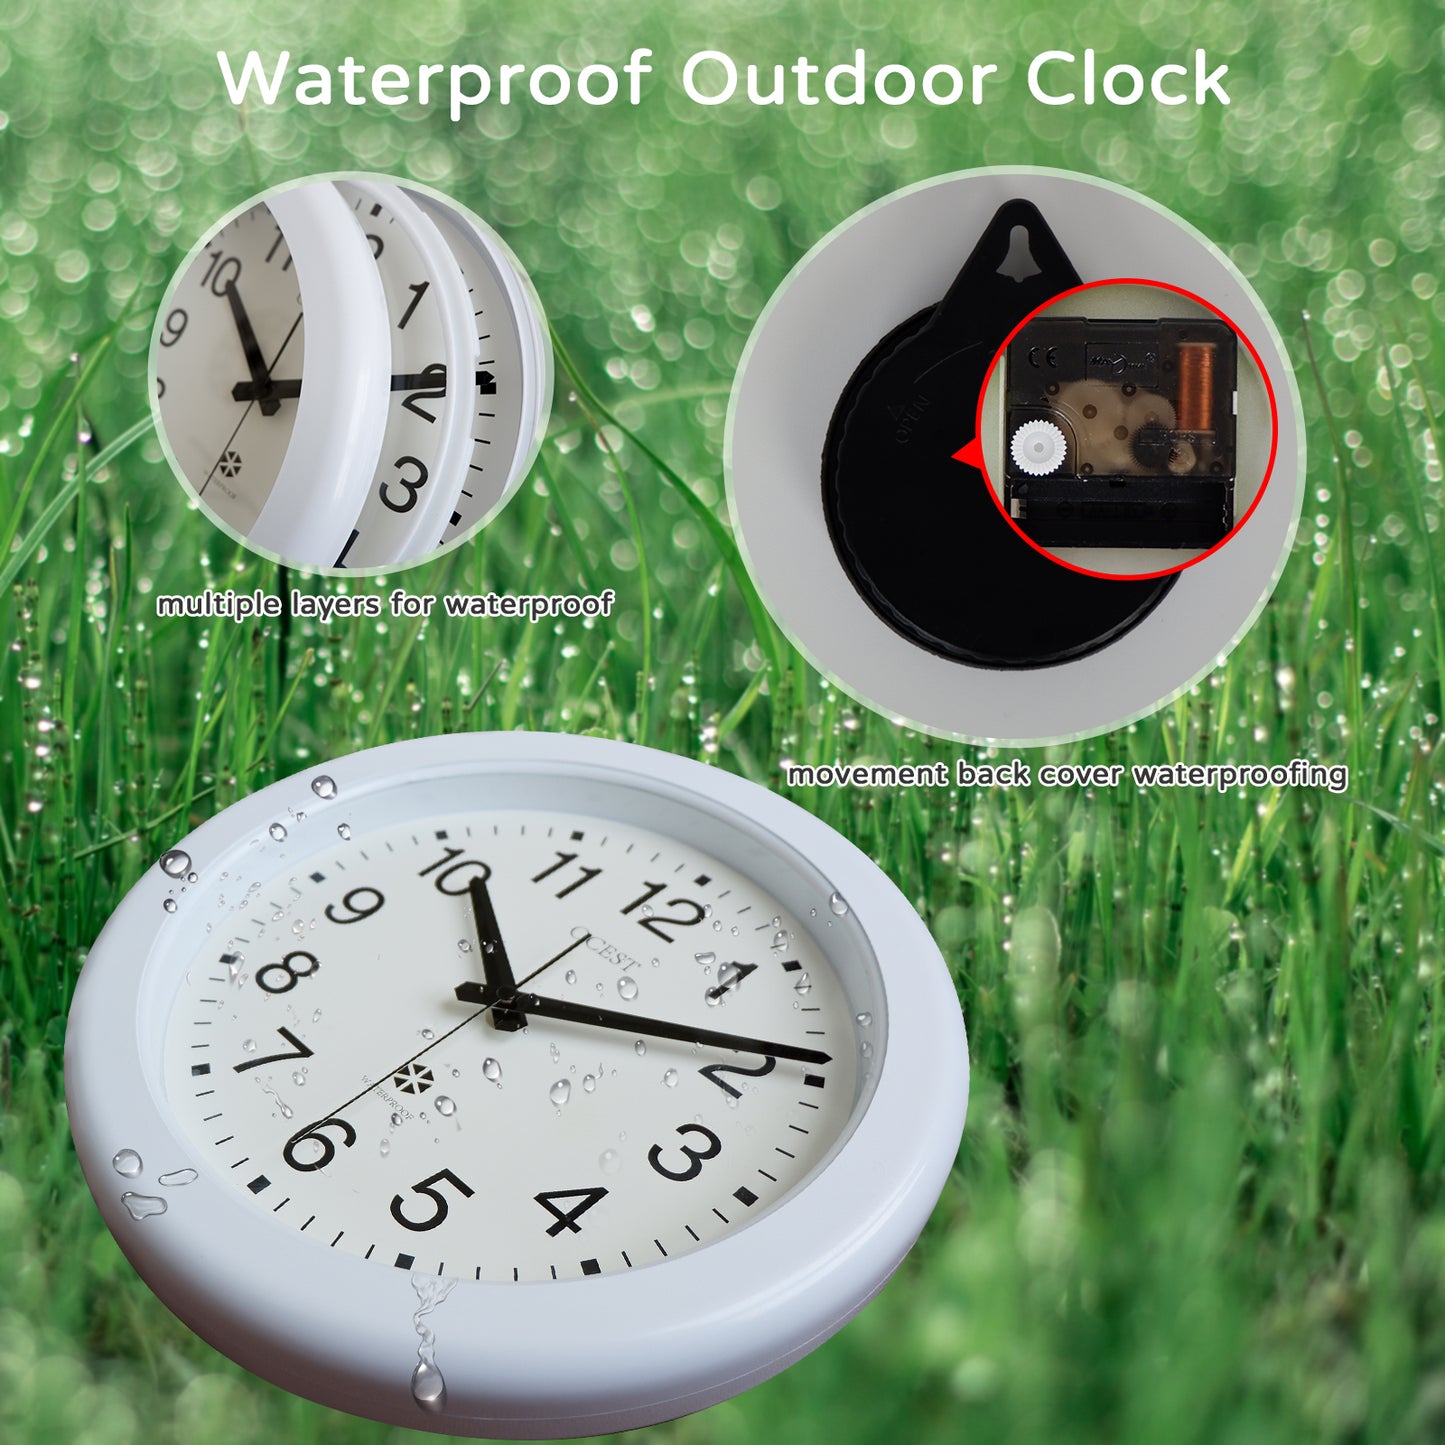 OCEST Sealed Indoor Outdoor Waterproof Wall Clock 12 Inch